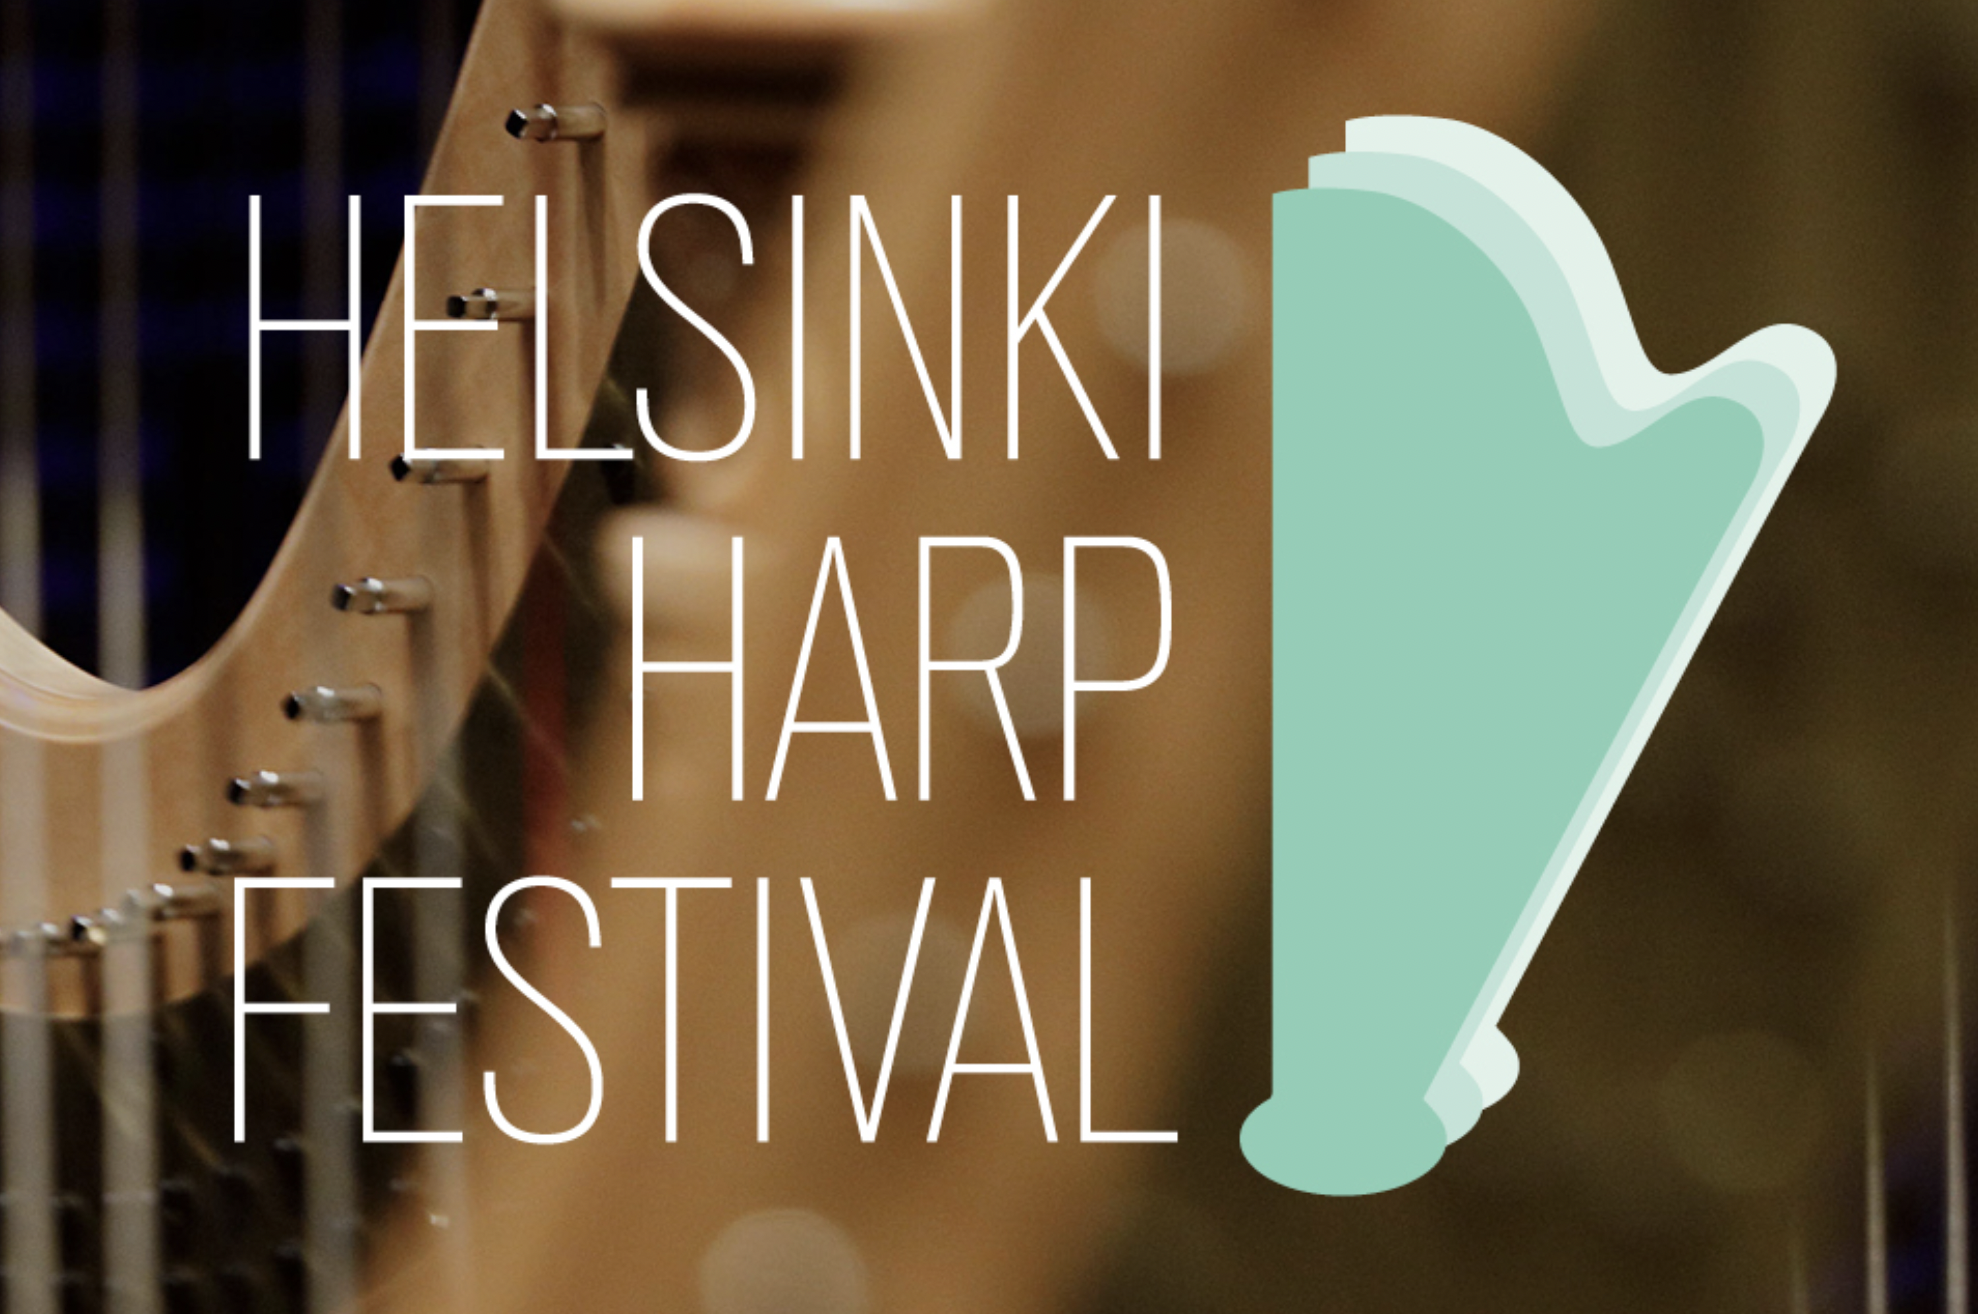 Helsinki Harp Festival 2023